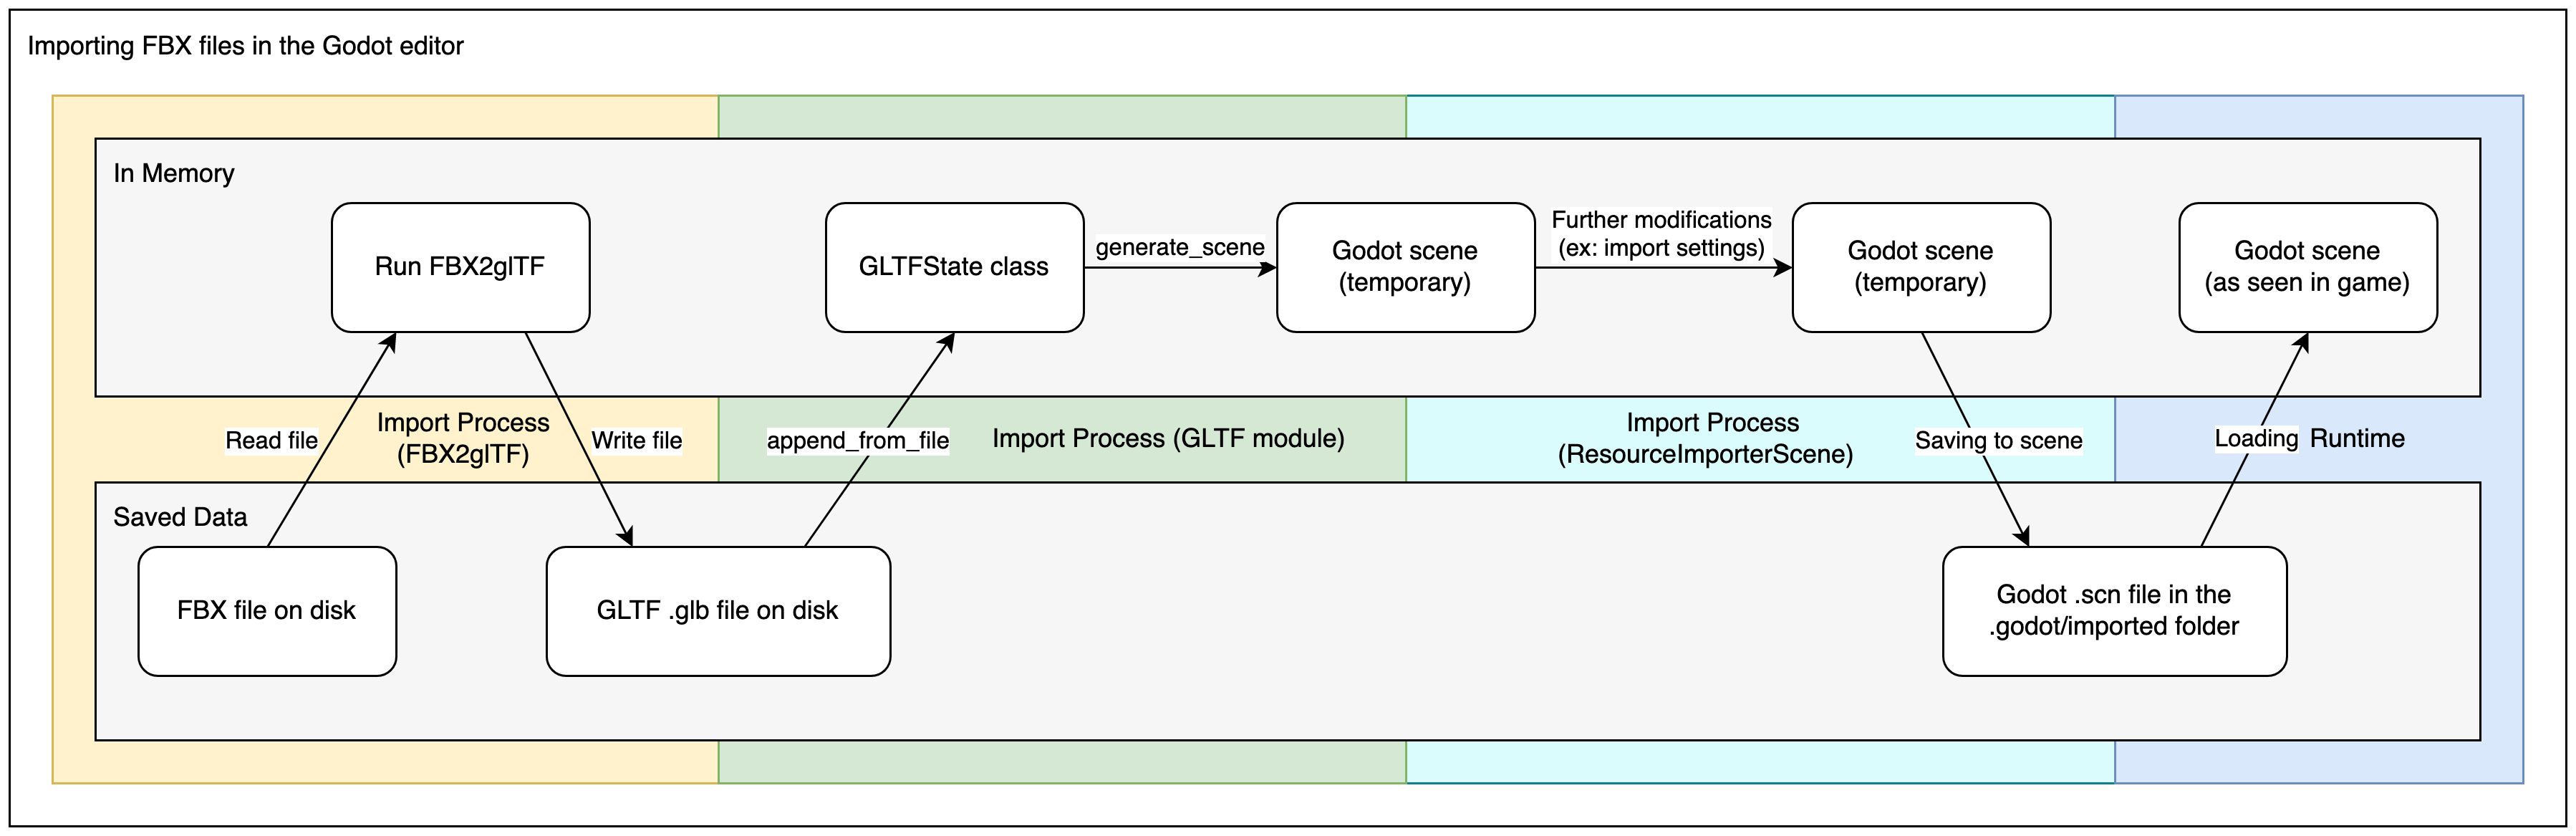 Diagramm zur Erläuterung des Importprozesses für FBX-Dateien in Godot